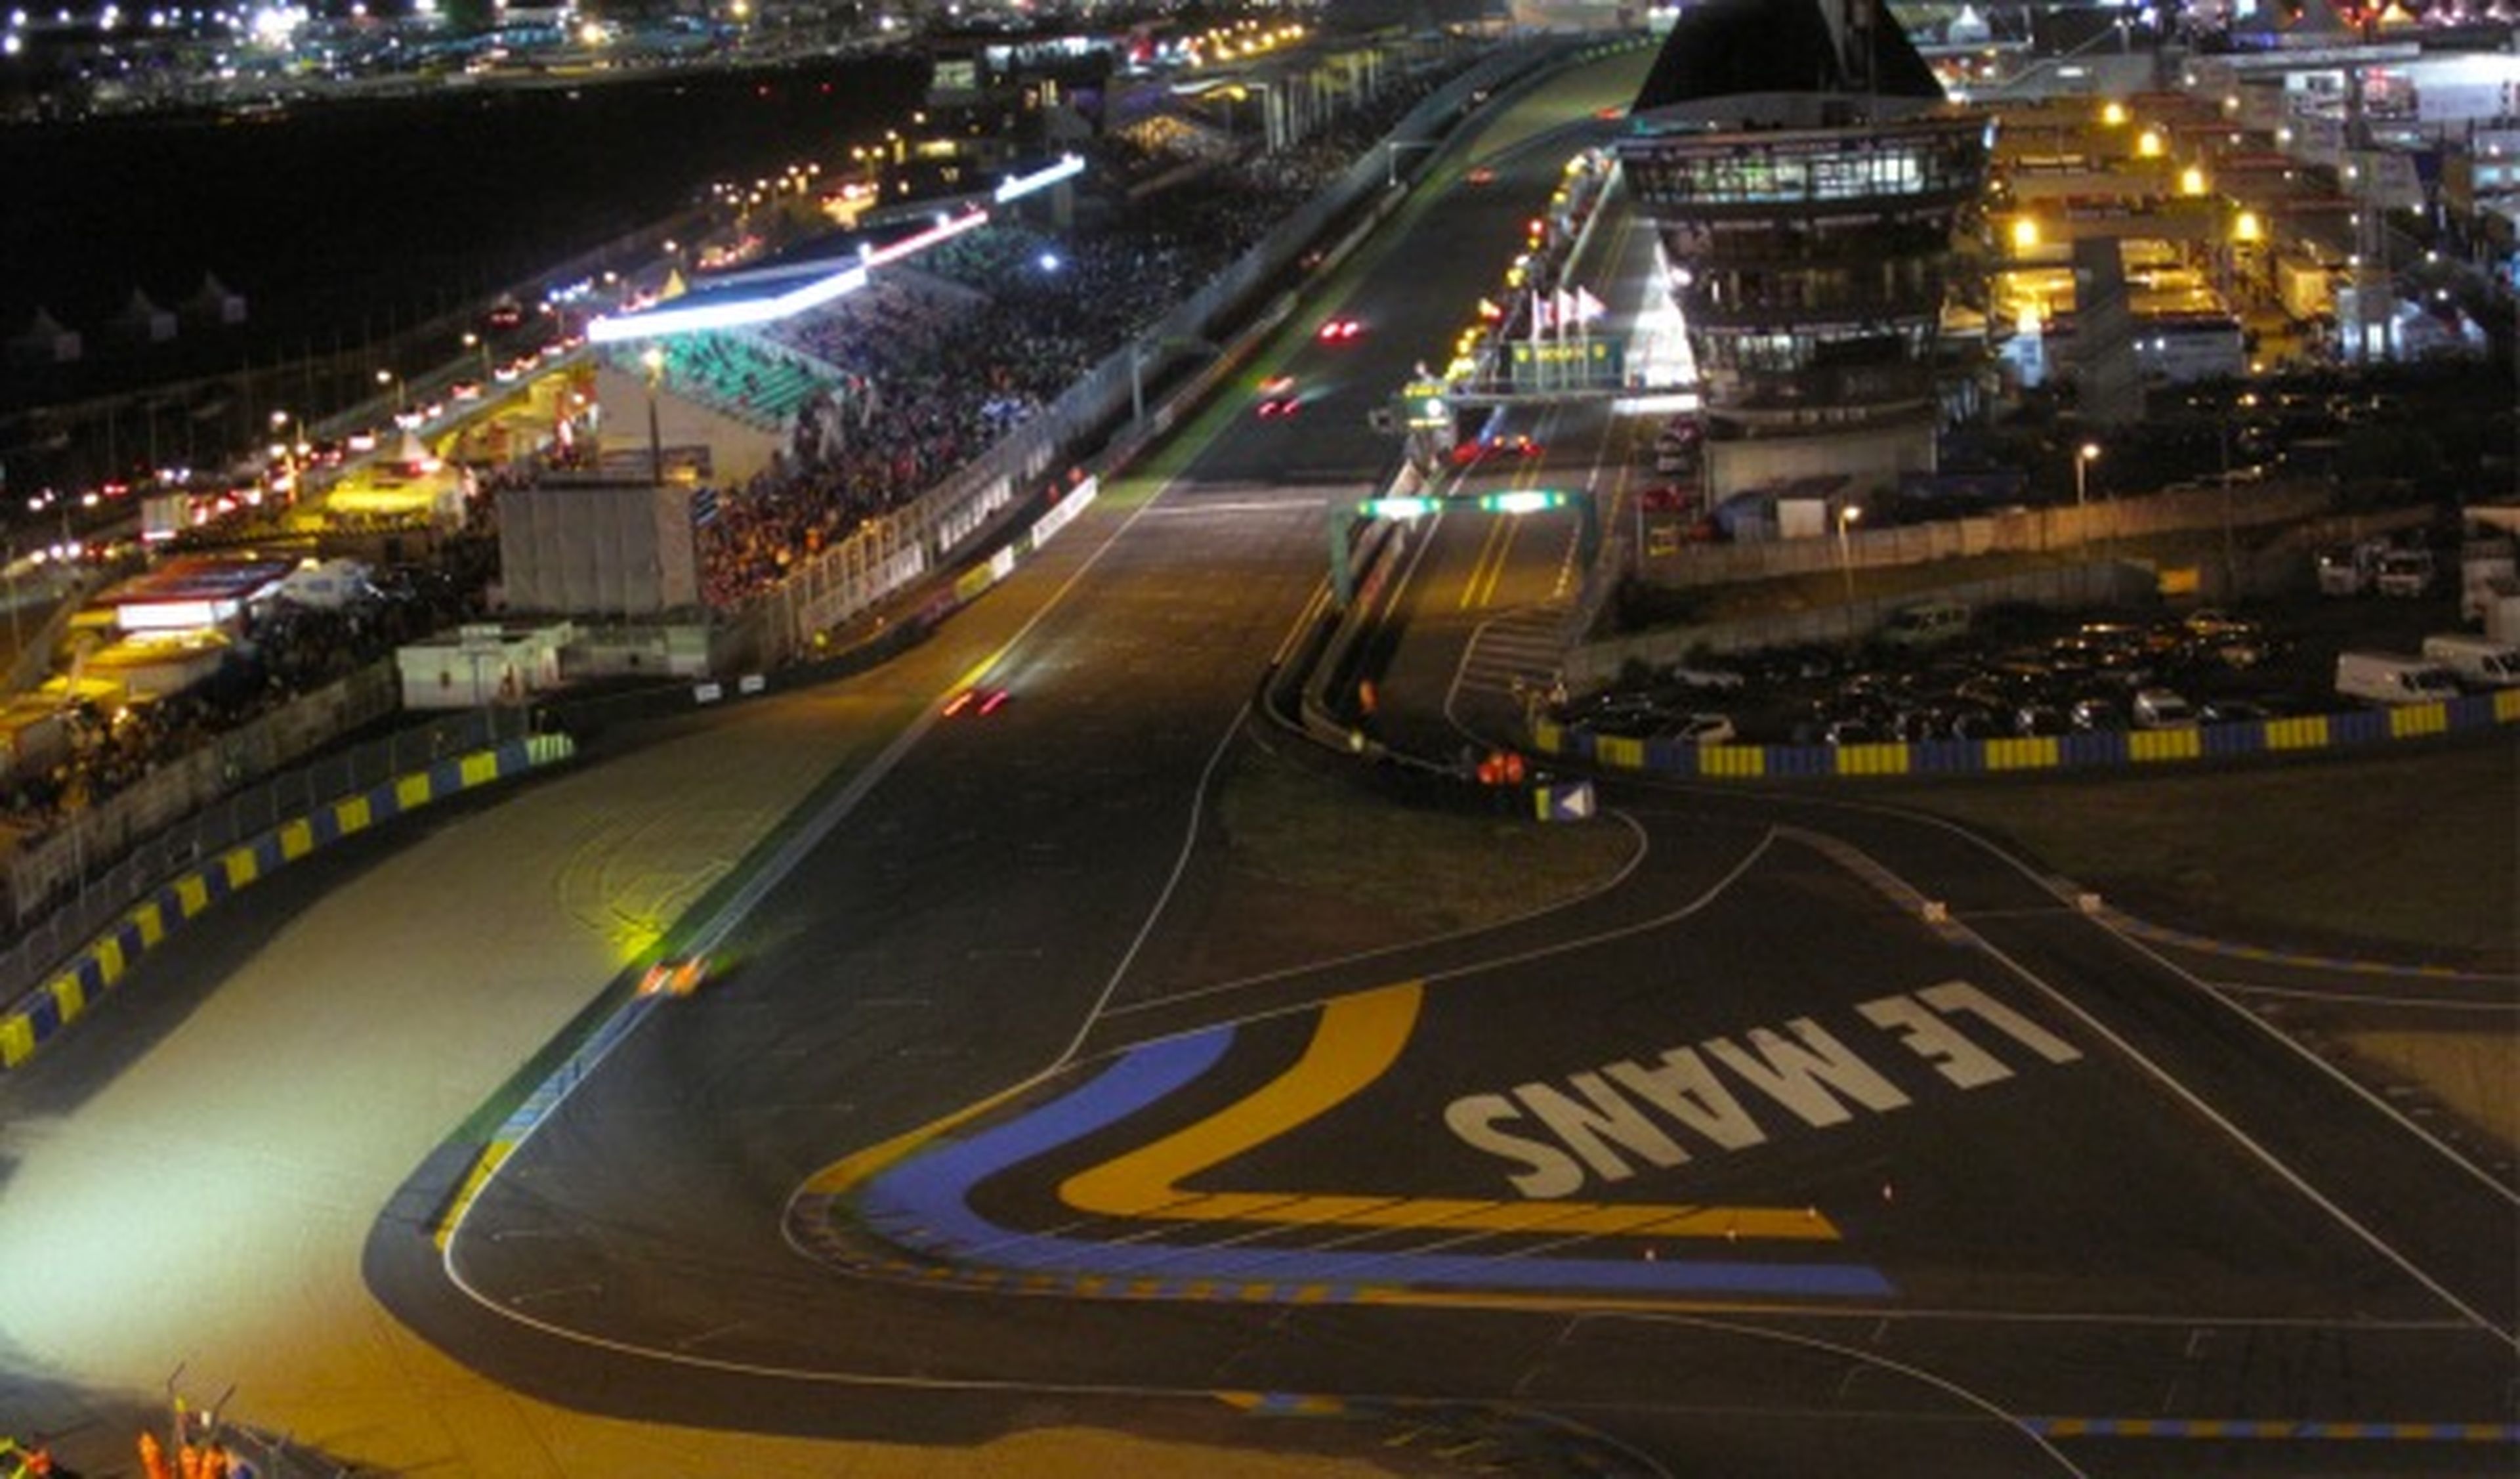 El circuito de La Sarthe, de noche en las 24 Horas de Le Mans 2012